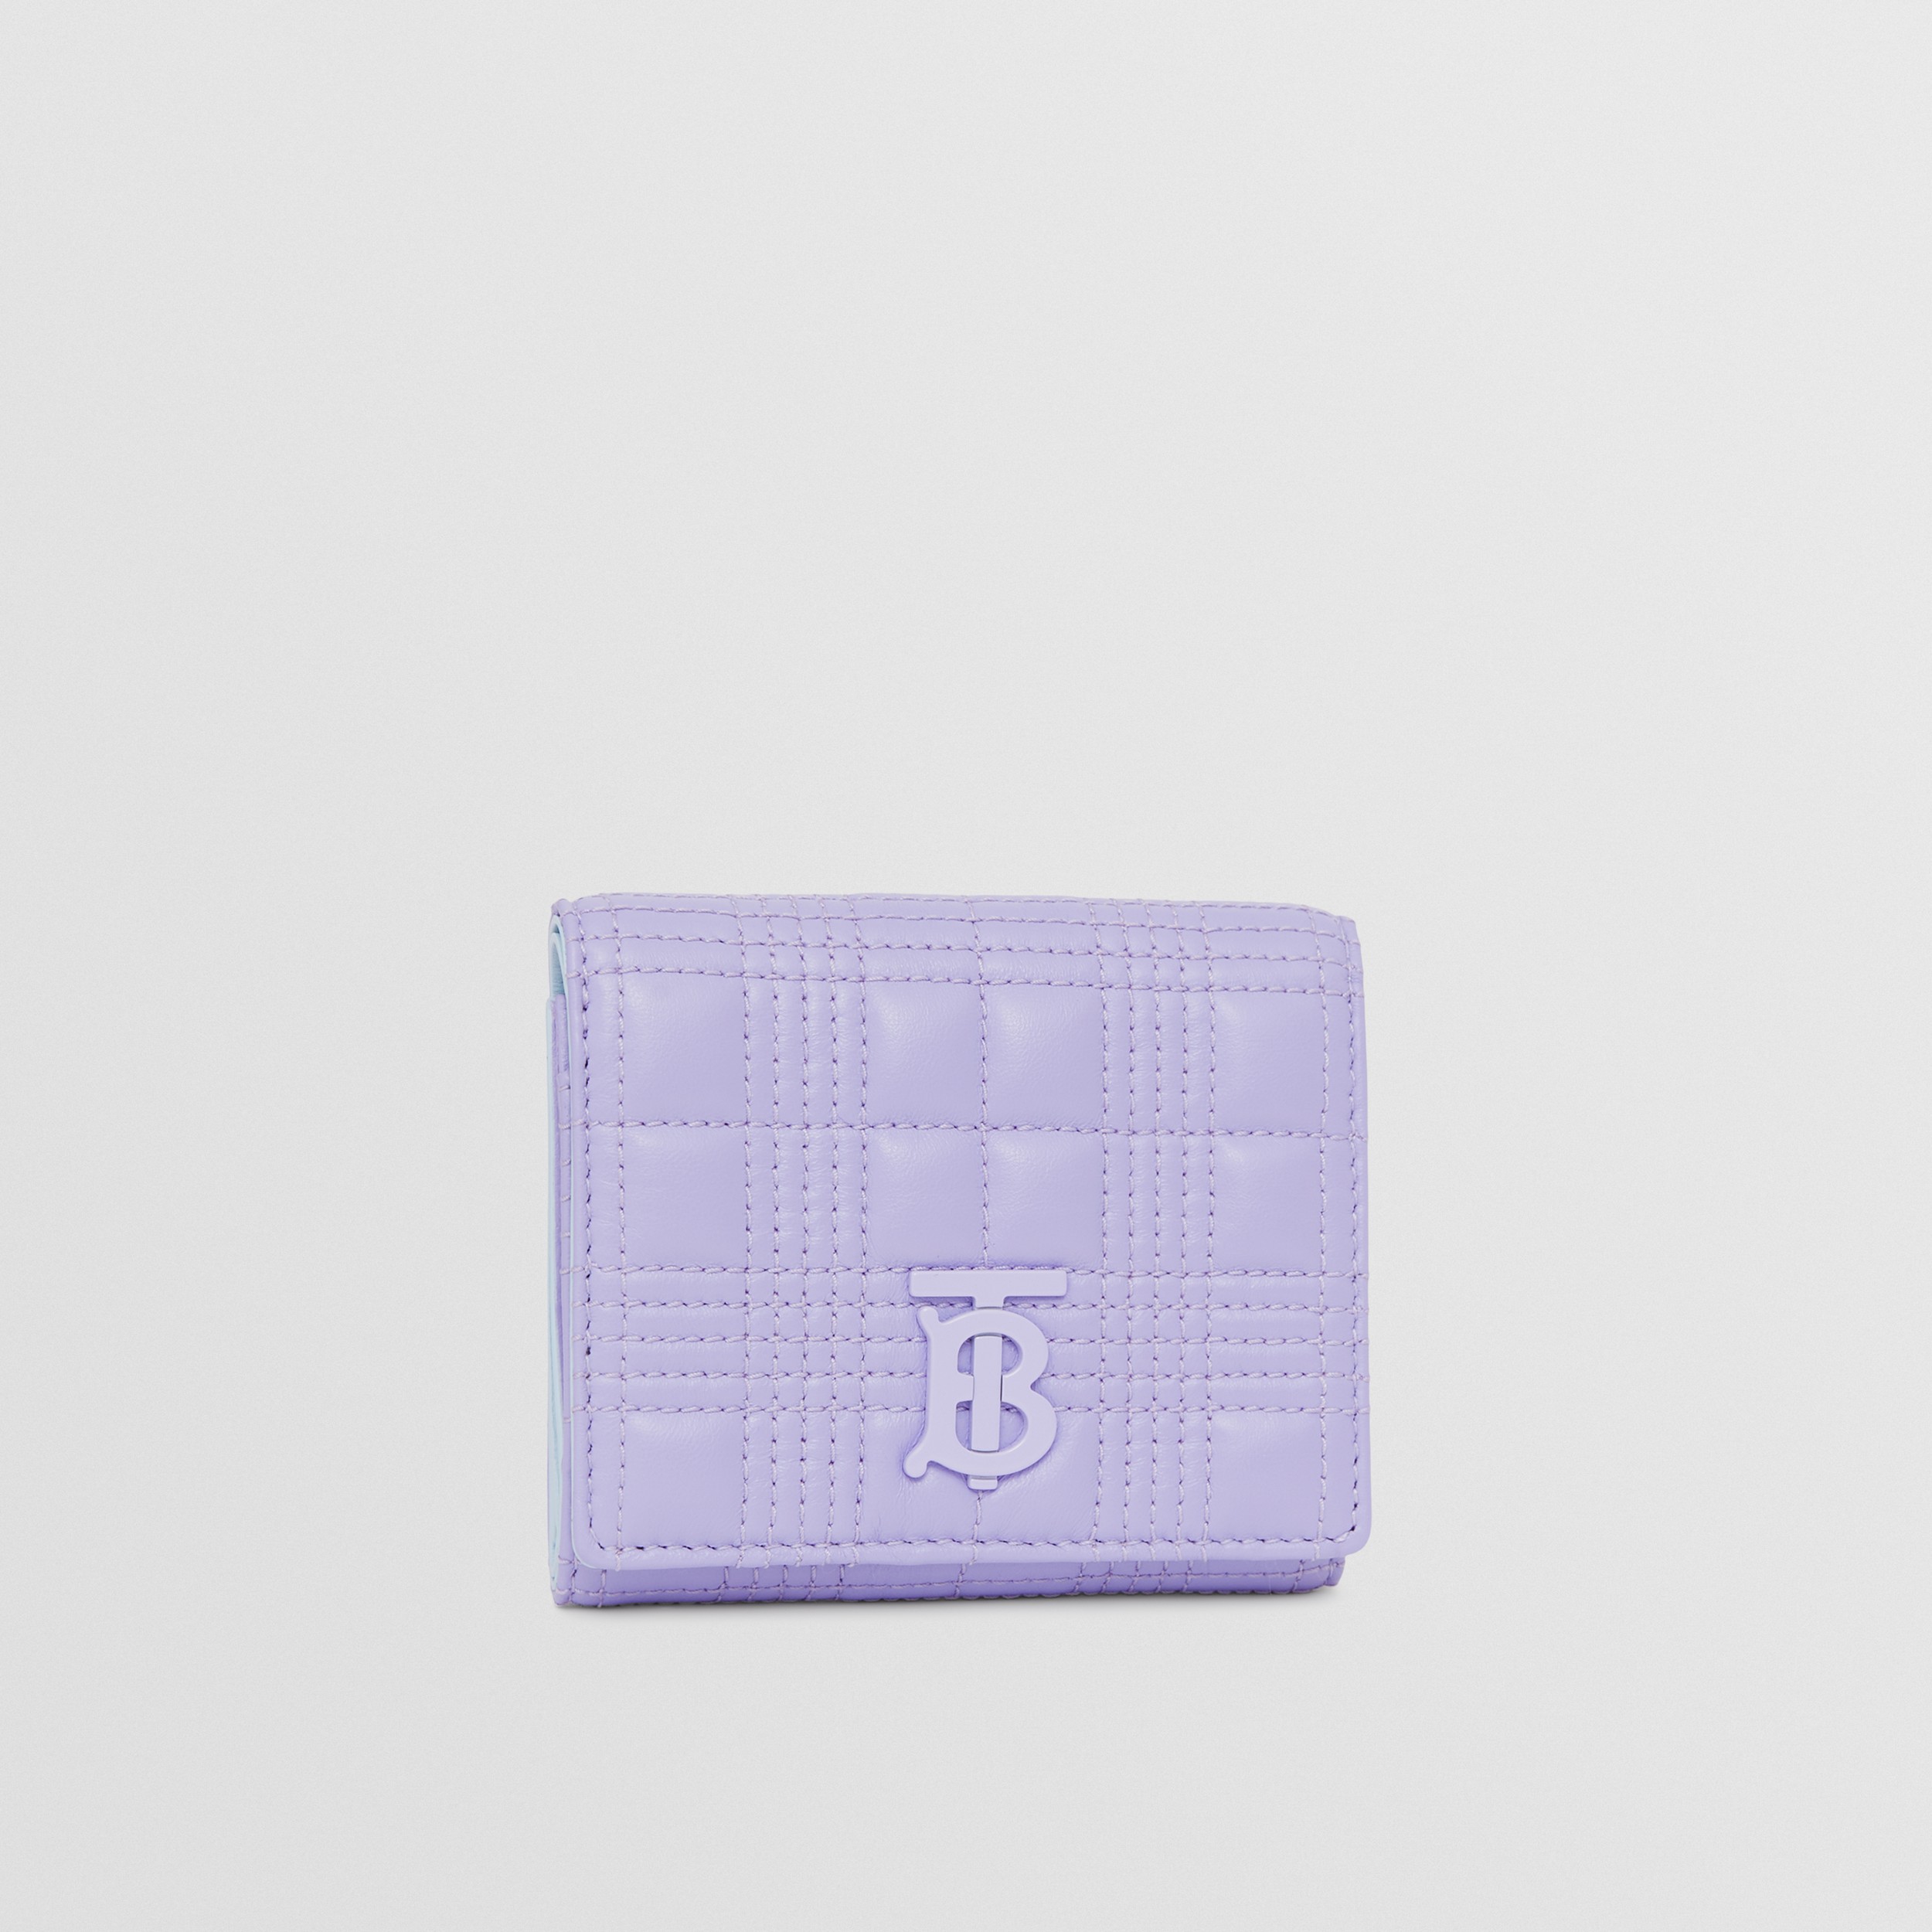 Складной бумажник Lola из кожи ягненка, компактный размер (Нежно-фиолетовый) - Для женщин | Официальный сайт Burberry® - 4